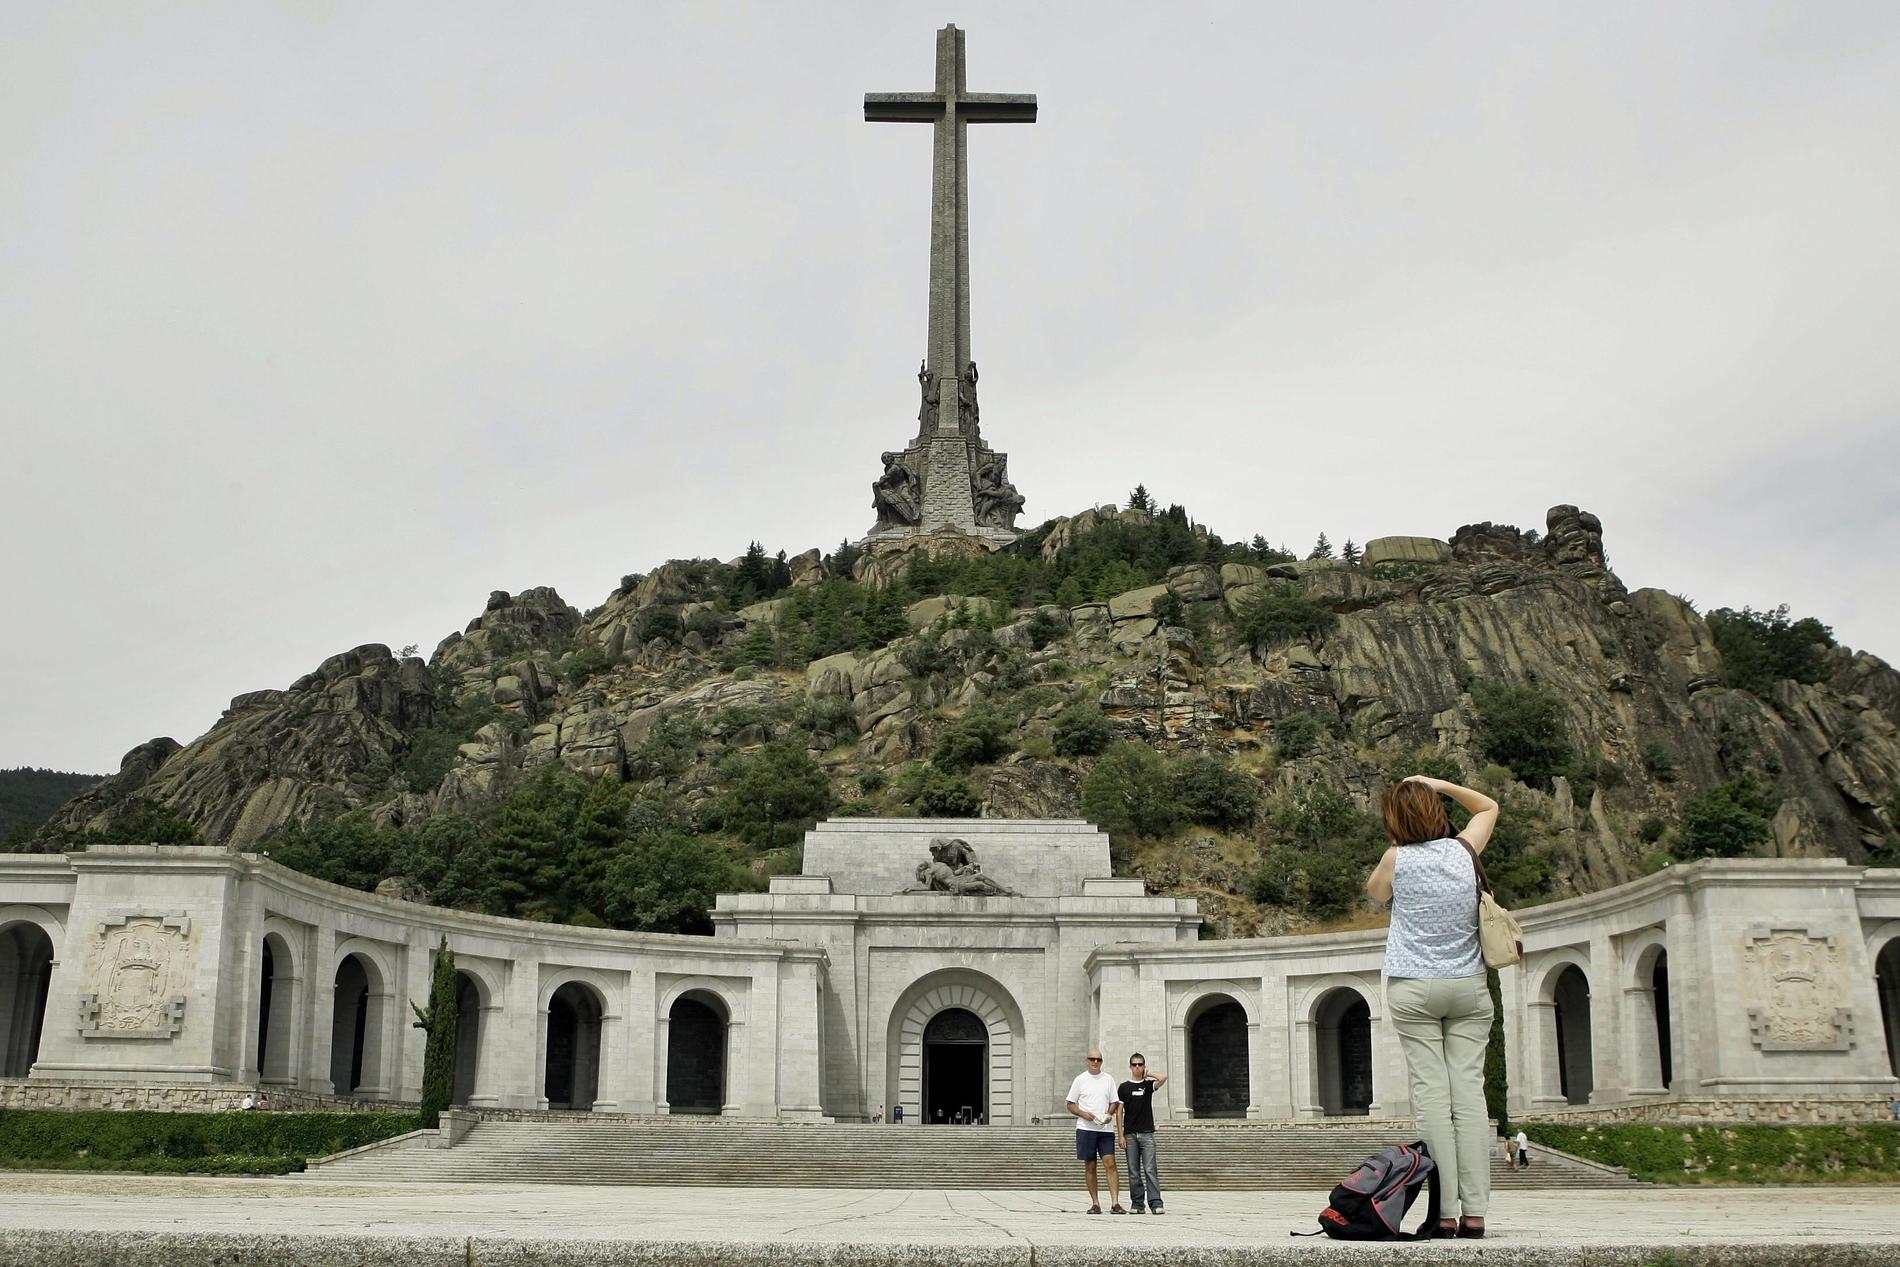 Det gigantiska mausoleet Valle de los Caídos (De fallnas dal) där den spanska diktatorn Franco vilat sedan sin död 1975. Platsen lockar turister såväl som anhängare till Franco. Arkivbild.